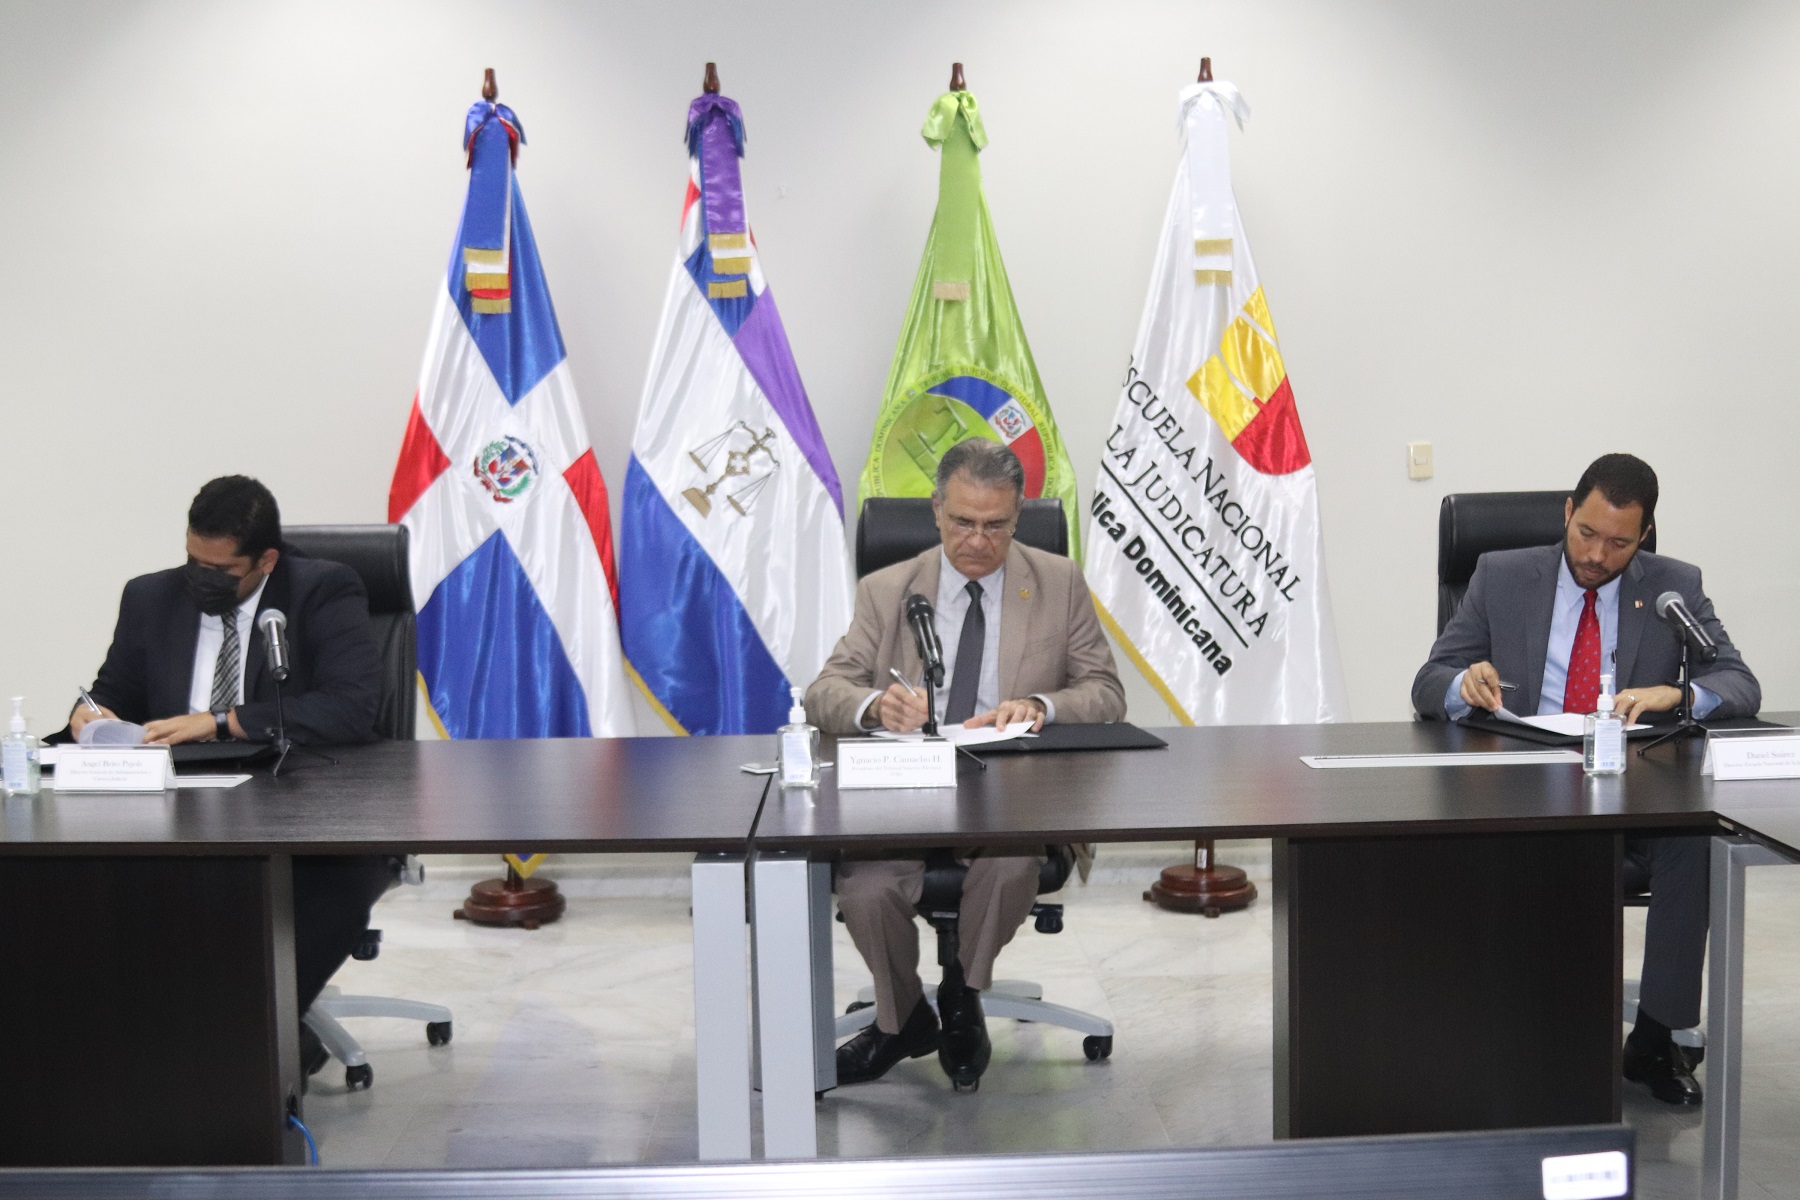 Poder Judicial y Tribunal Superior Electoral firman acuerdo para desarrollar acciones de fortalecimiento institucional